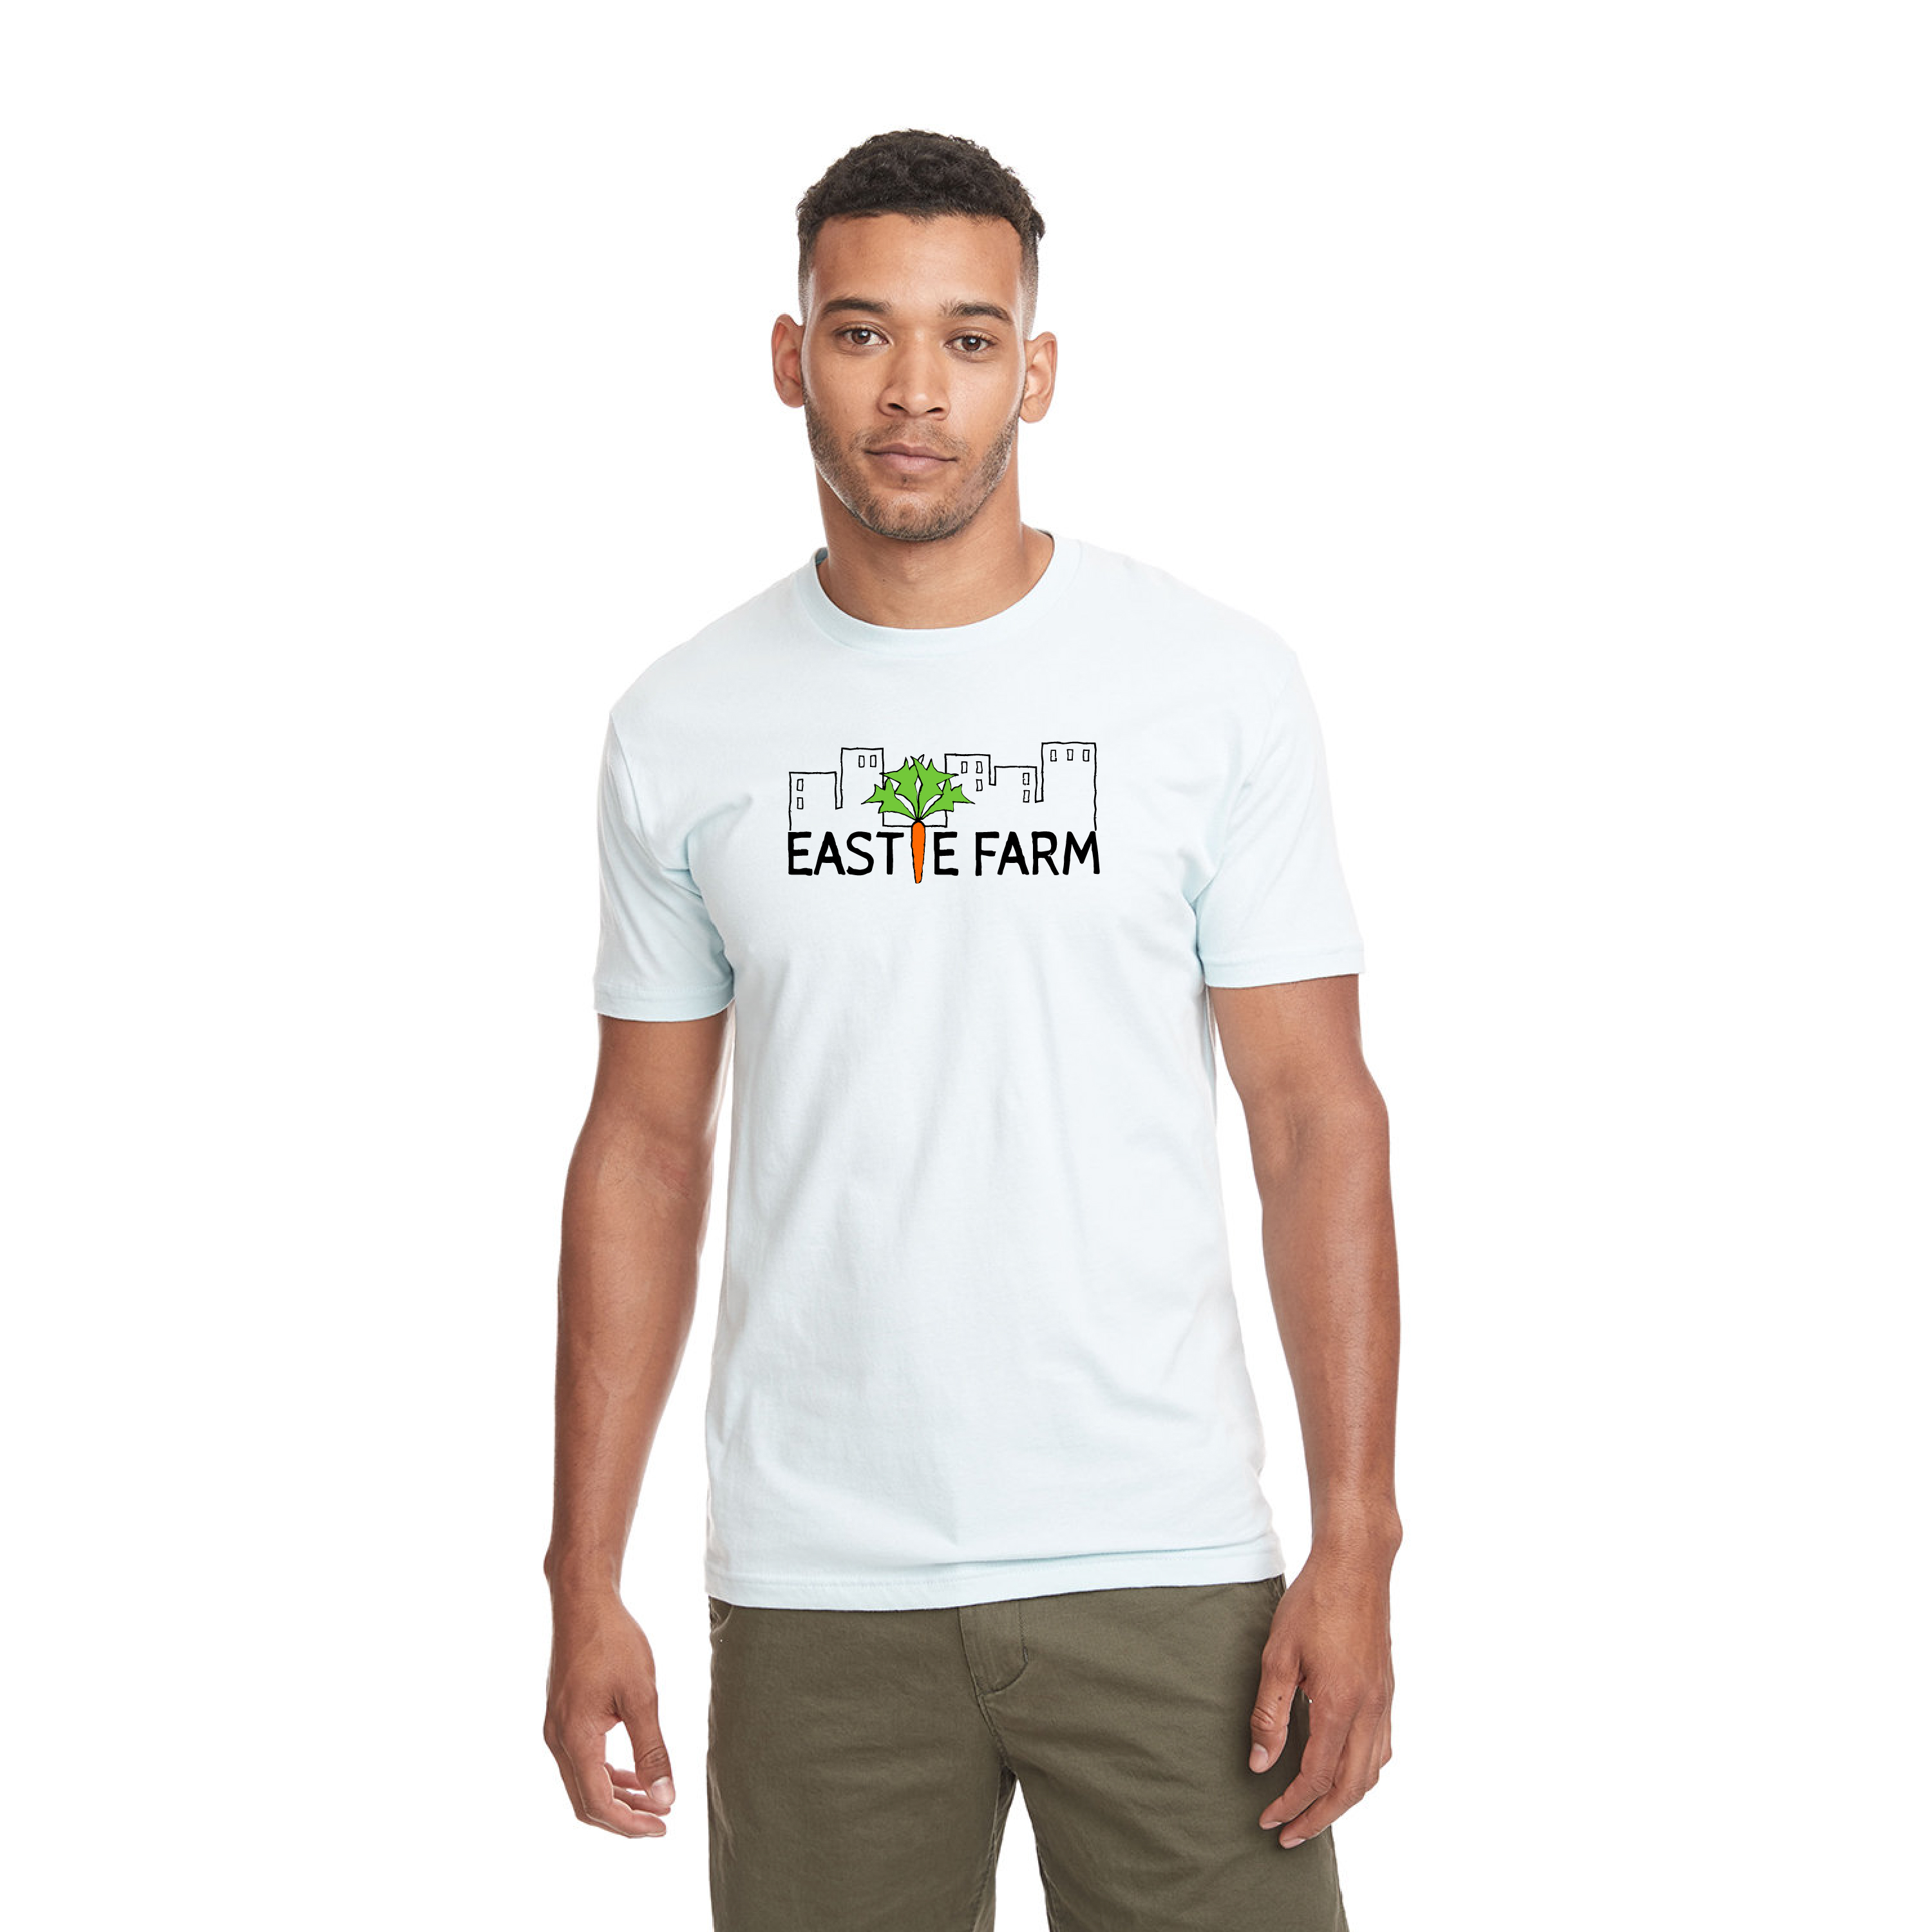 Eastie Farm Next Level Apparel Unisex Cotton T-Shirt